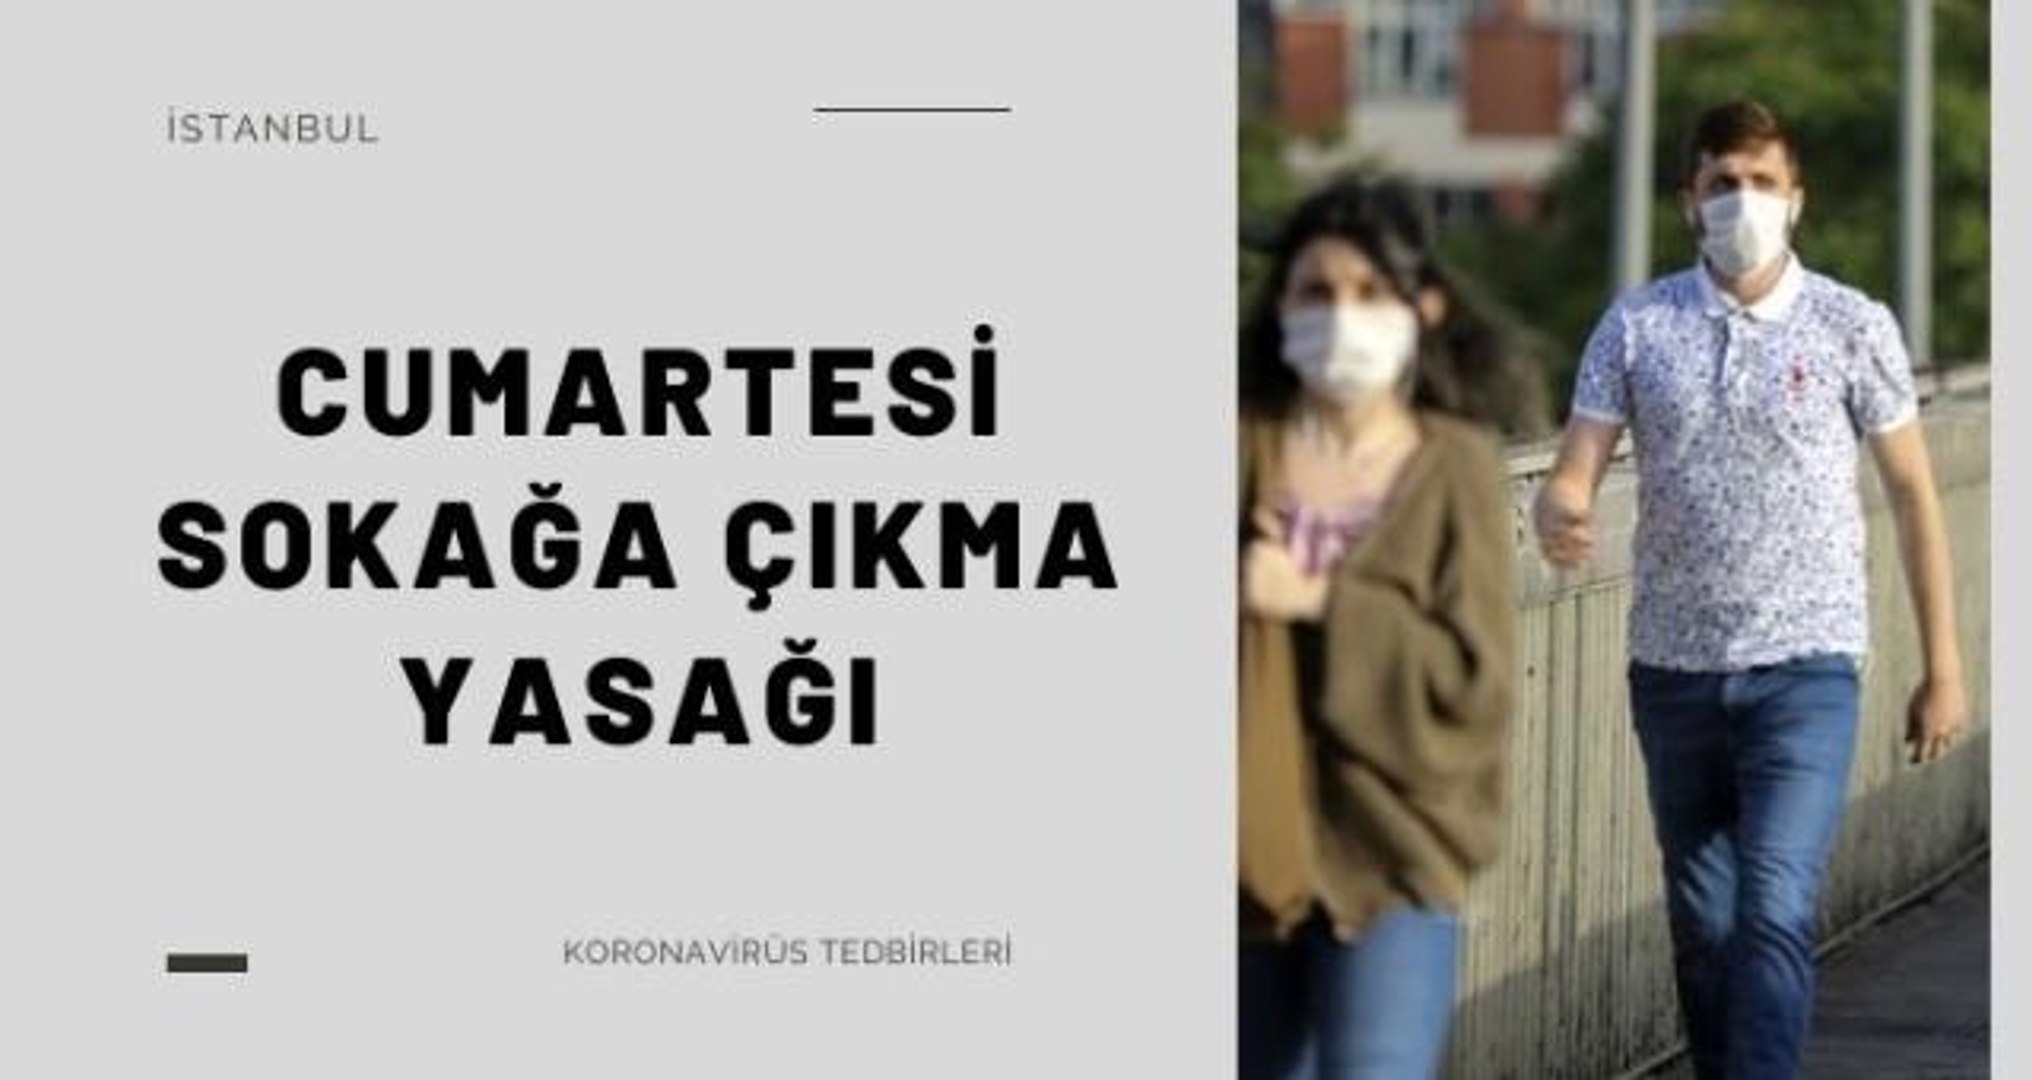 istanbul cumartesi yasak mi hafta sonu cumartesi istanbul da sokaga cikma yasagi var mi dailymotion video